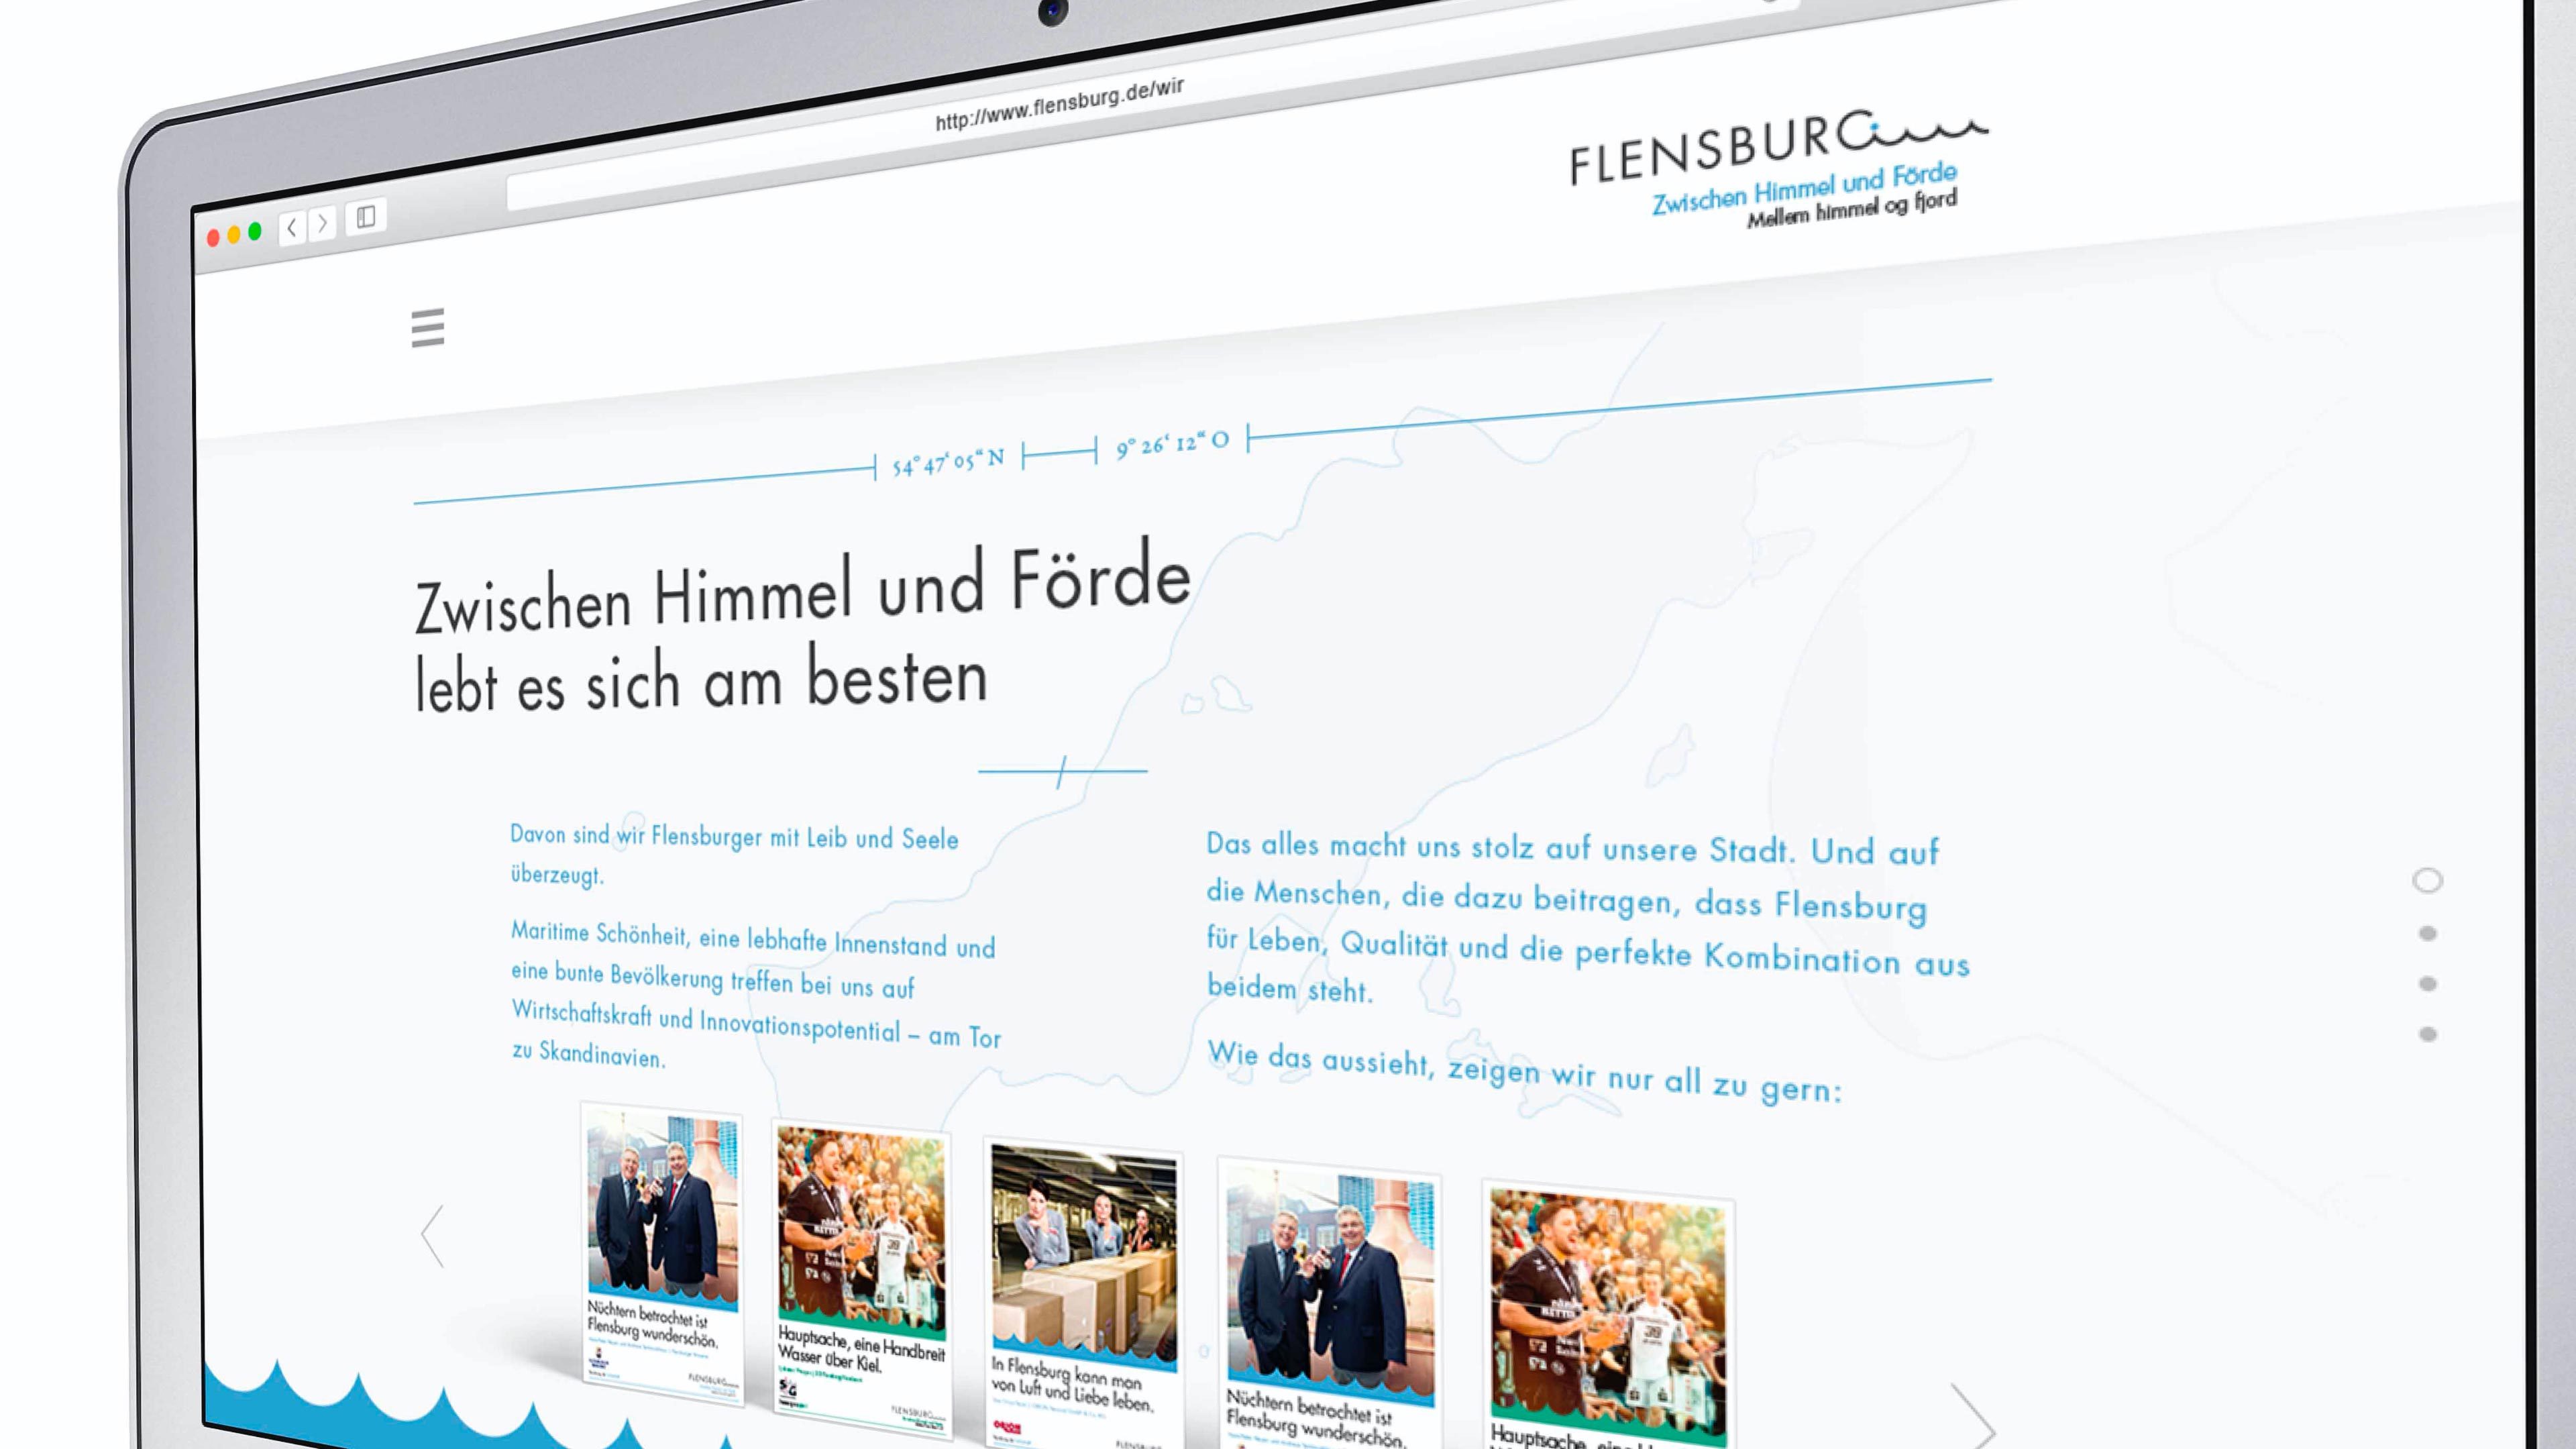 Nahaufnahme eines Tablets, das die Website für Flensburg zeigt mit Text "Zwischen Himmel und Förde lebt es sich am besten"